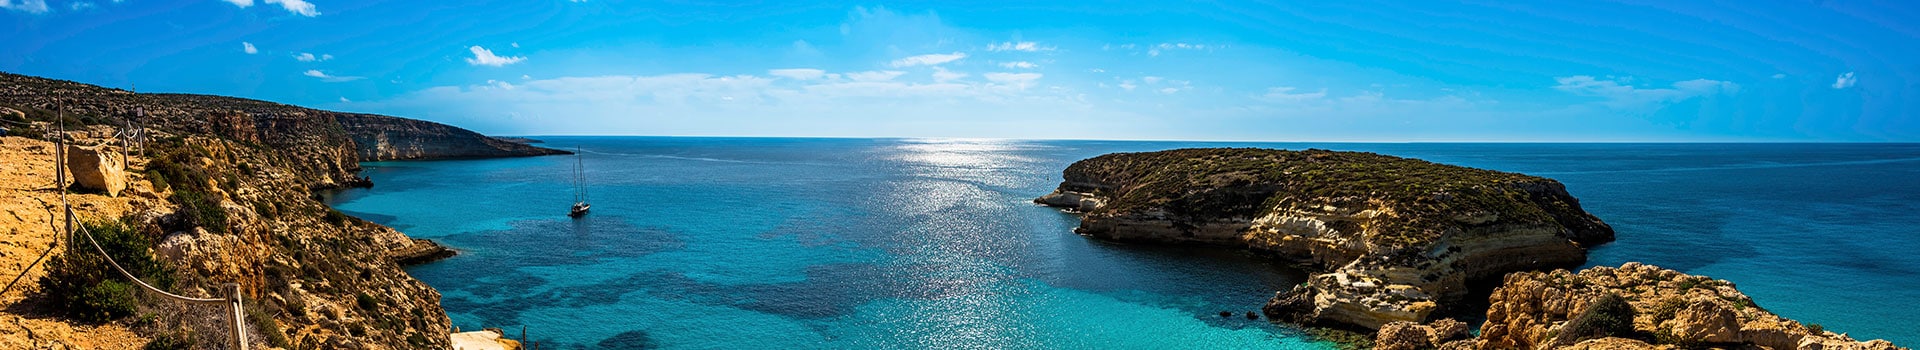 Trapani - Lampedusa